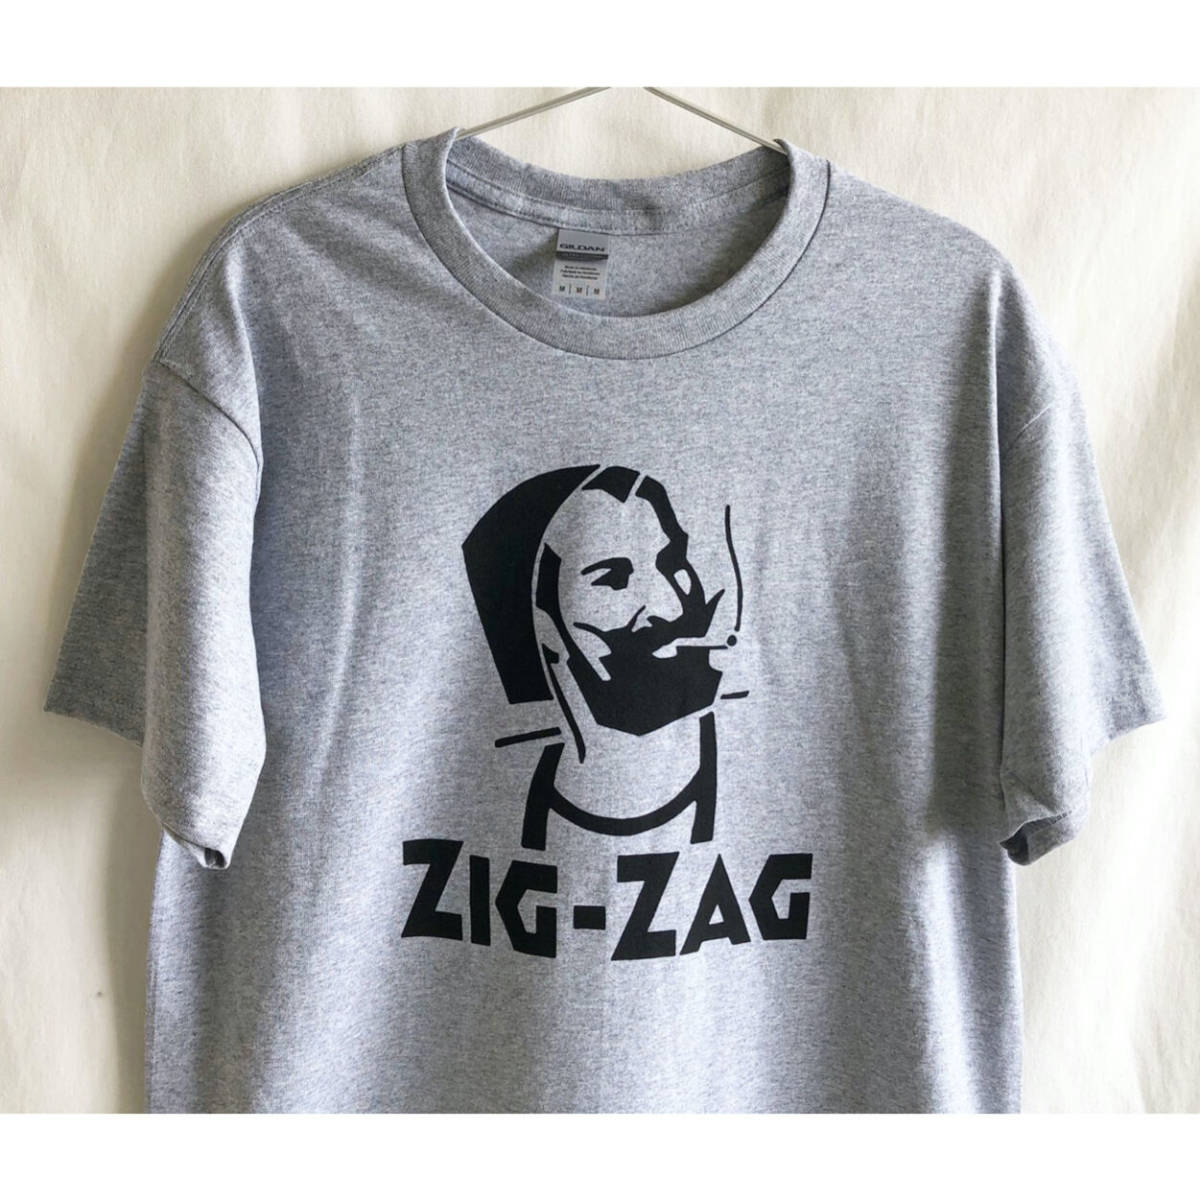 即決 /再入荷【海外買付/新品】ZIG ZAG Tシャツ/ヘザーグレイ/Lサイズ/巻きタバコ/ジョイント/GILDAN/ZIG ZAG MAN/激レア (luz.zz.t.g)_画像6